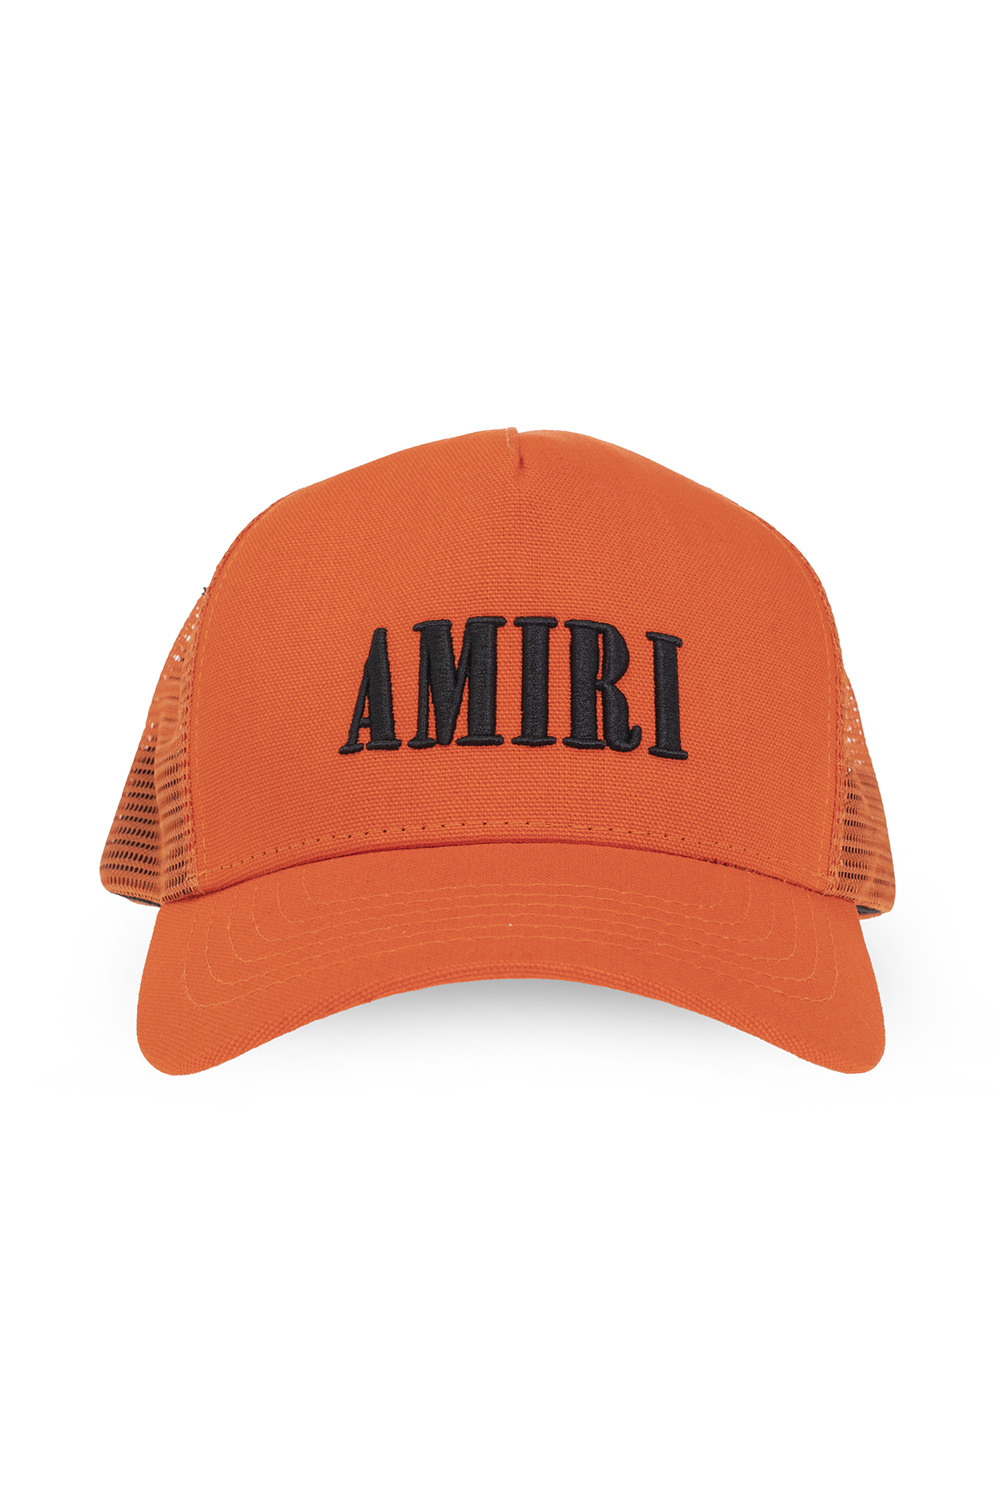 Amiri Trucker Mountain hat